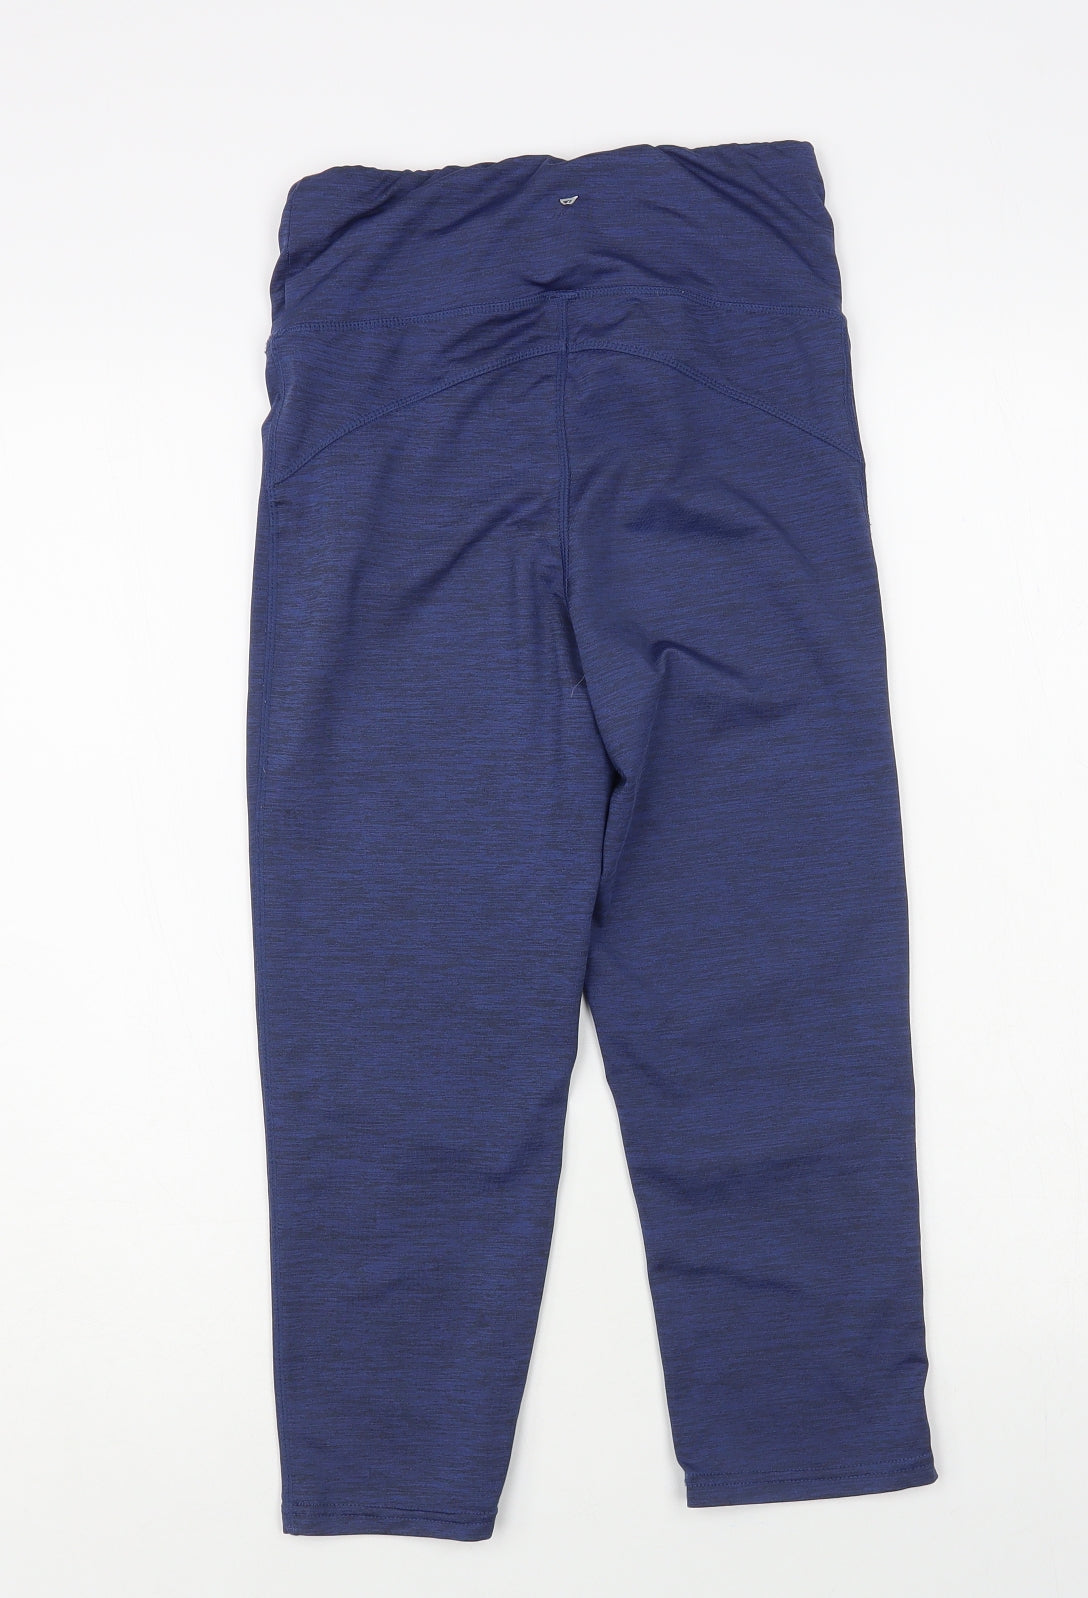 Primark Womens Blue Cotton Jogger Leggings Size 10 L27 in – Preworn Ltd